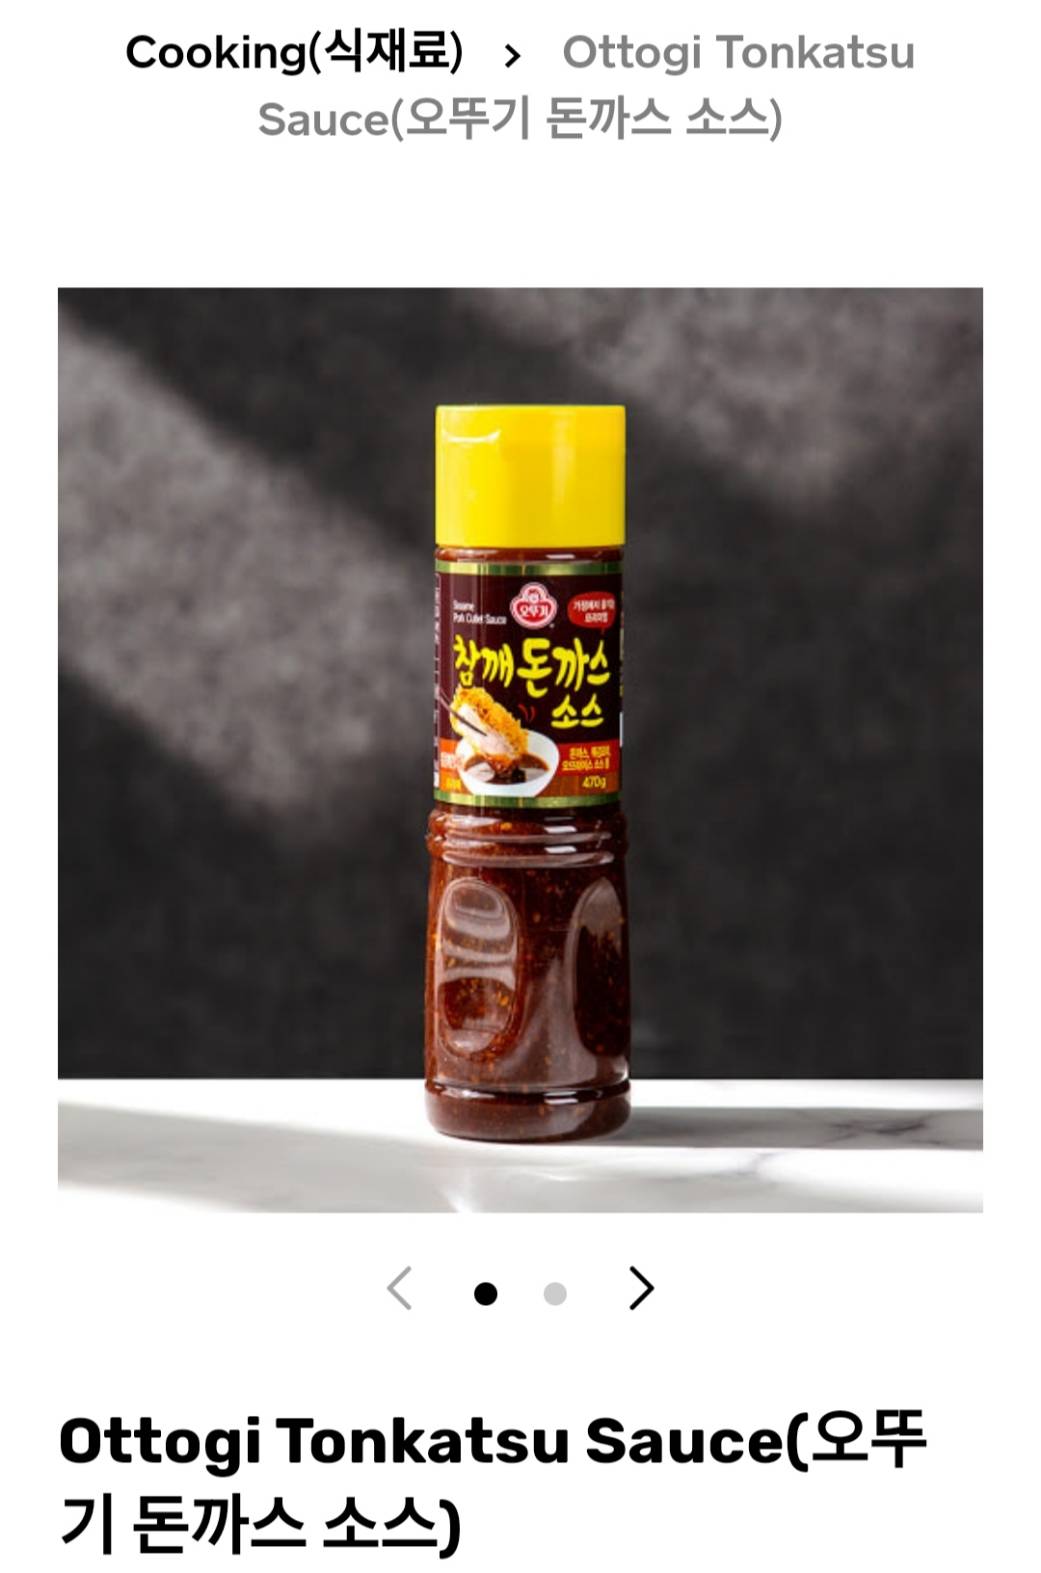 ซอสทงคัทสึเกาหลี  korean sauce ottogi tonkatsu sauce pork cutlet sauce 470g 오뚜기 돈까스 소스